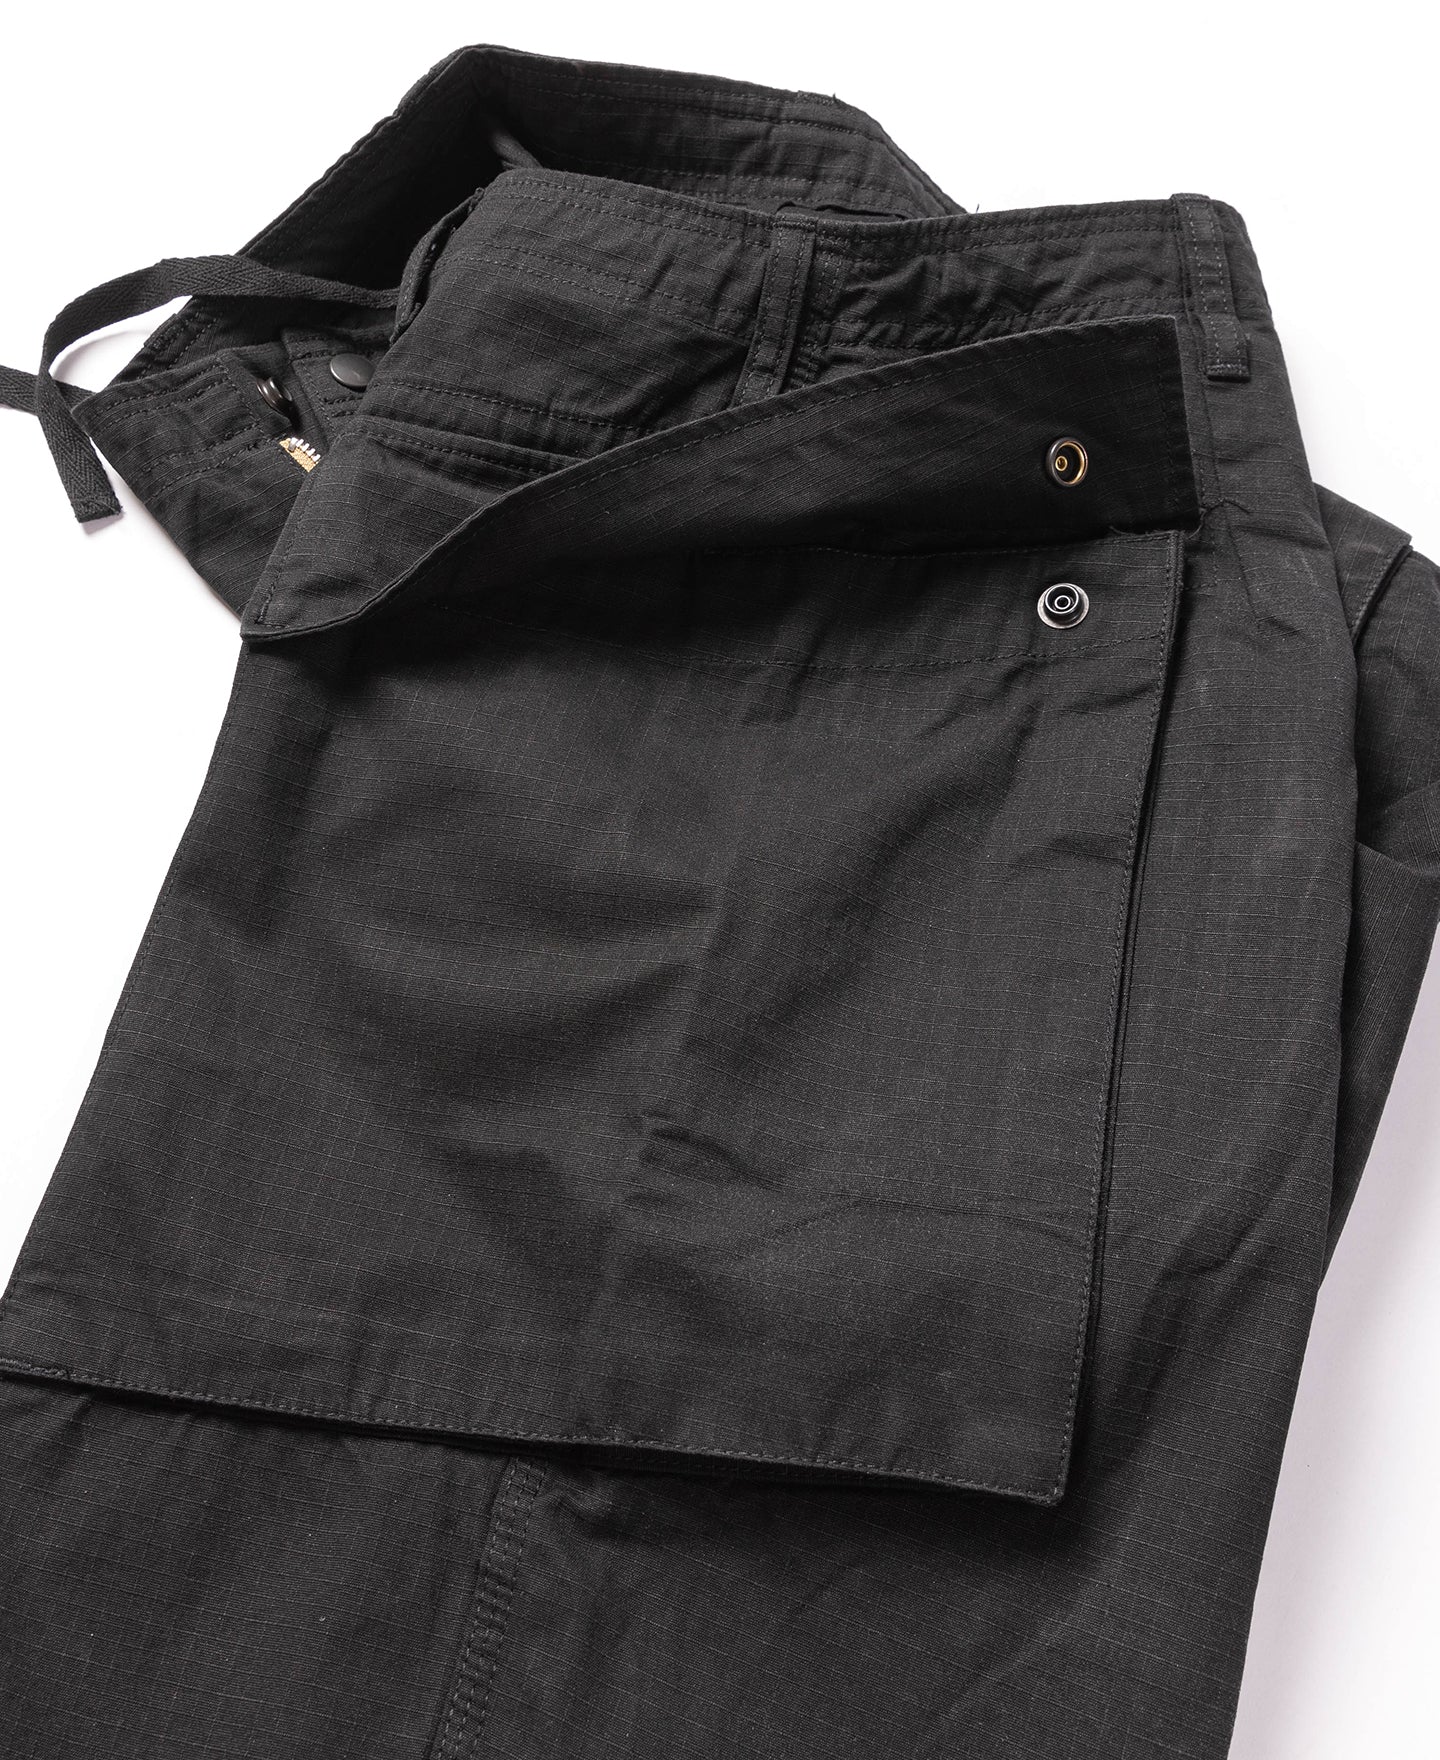 8.5 oz Cotton Ripstop Cargo Loose Shorts - Black | Bronson